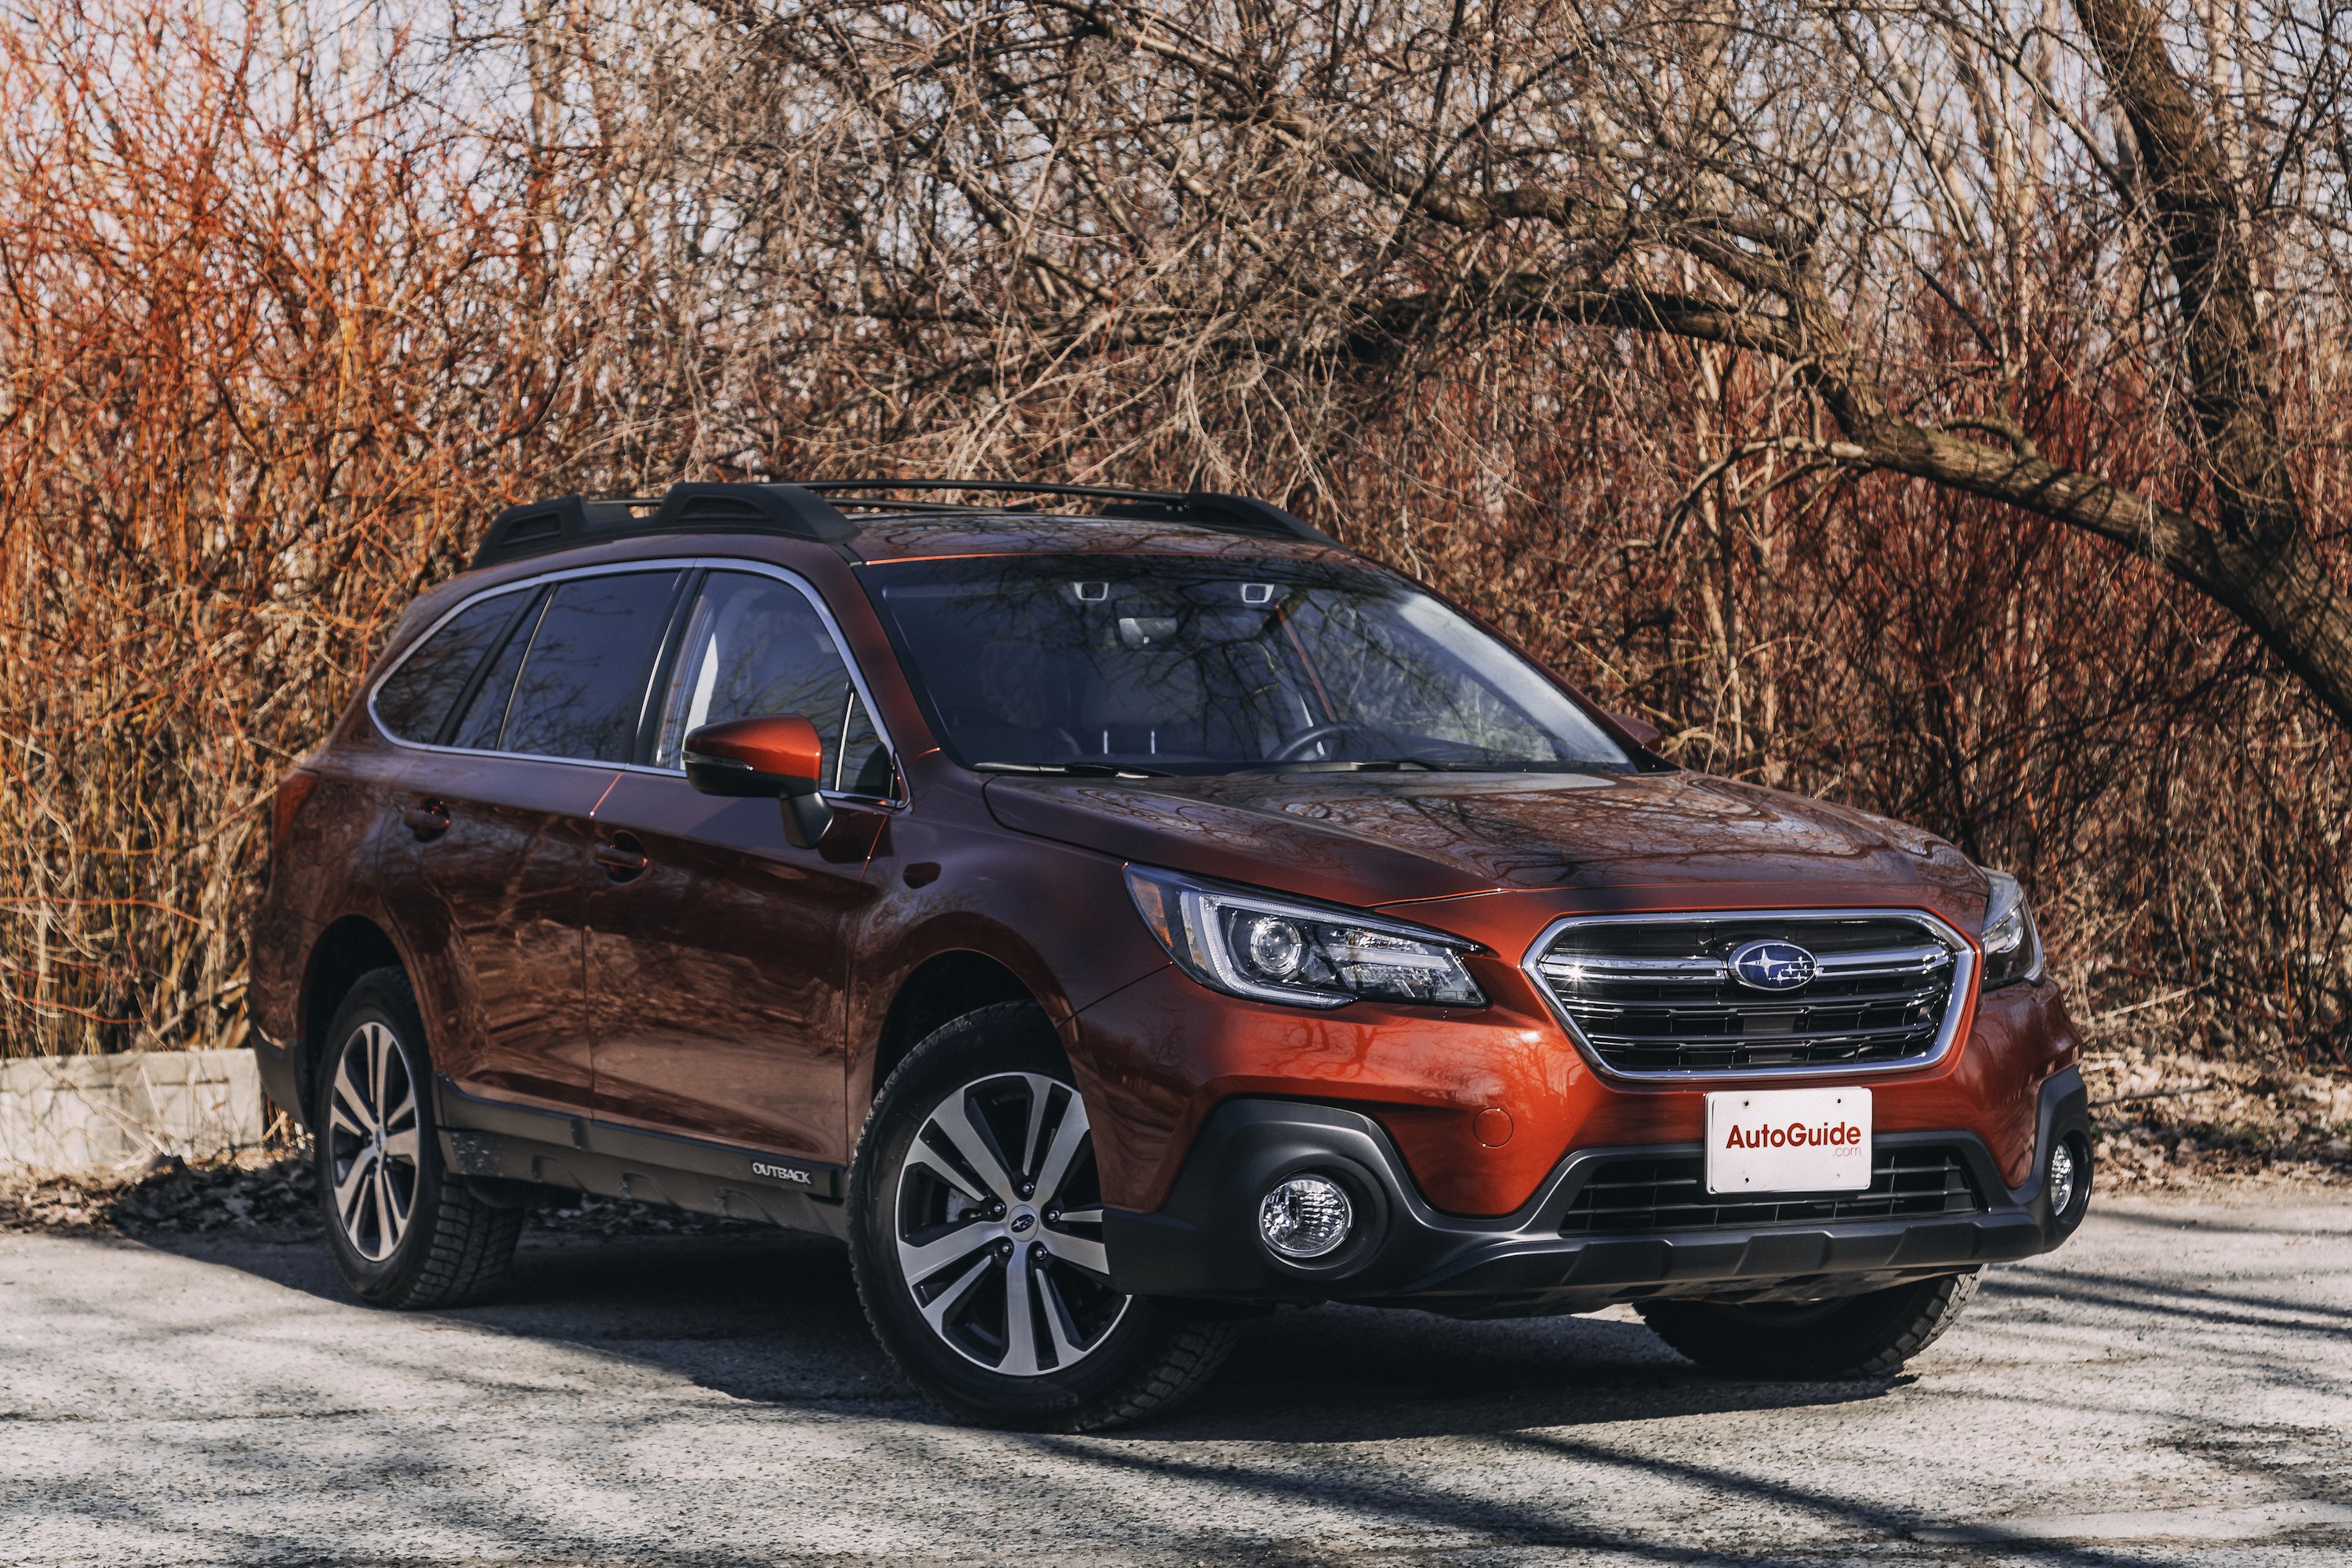 2018 Subaru Outback Review